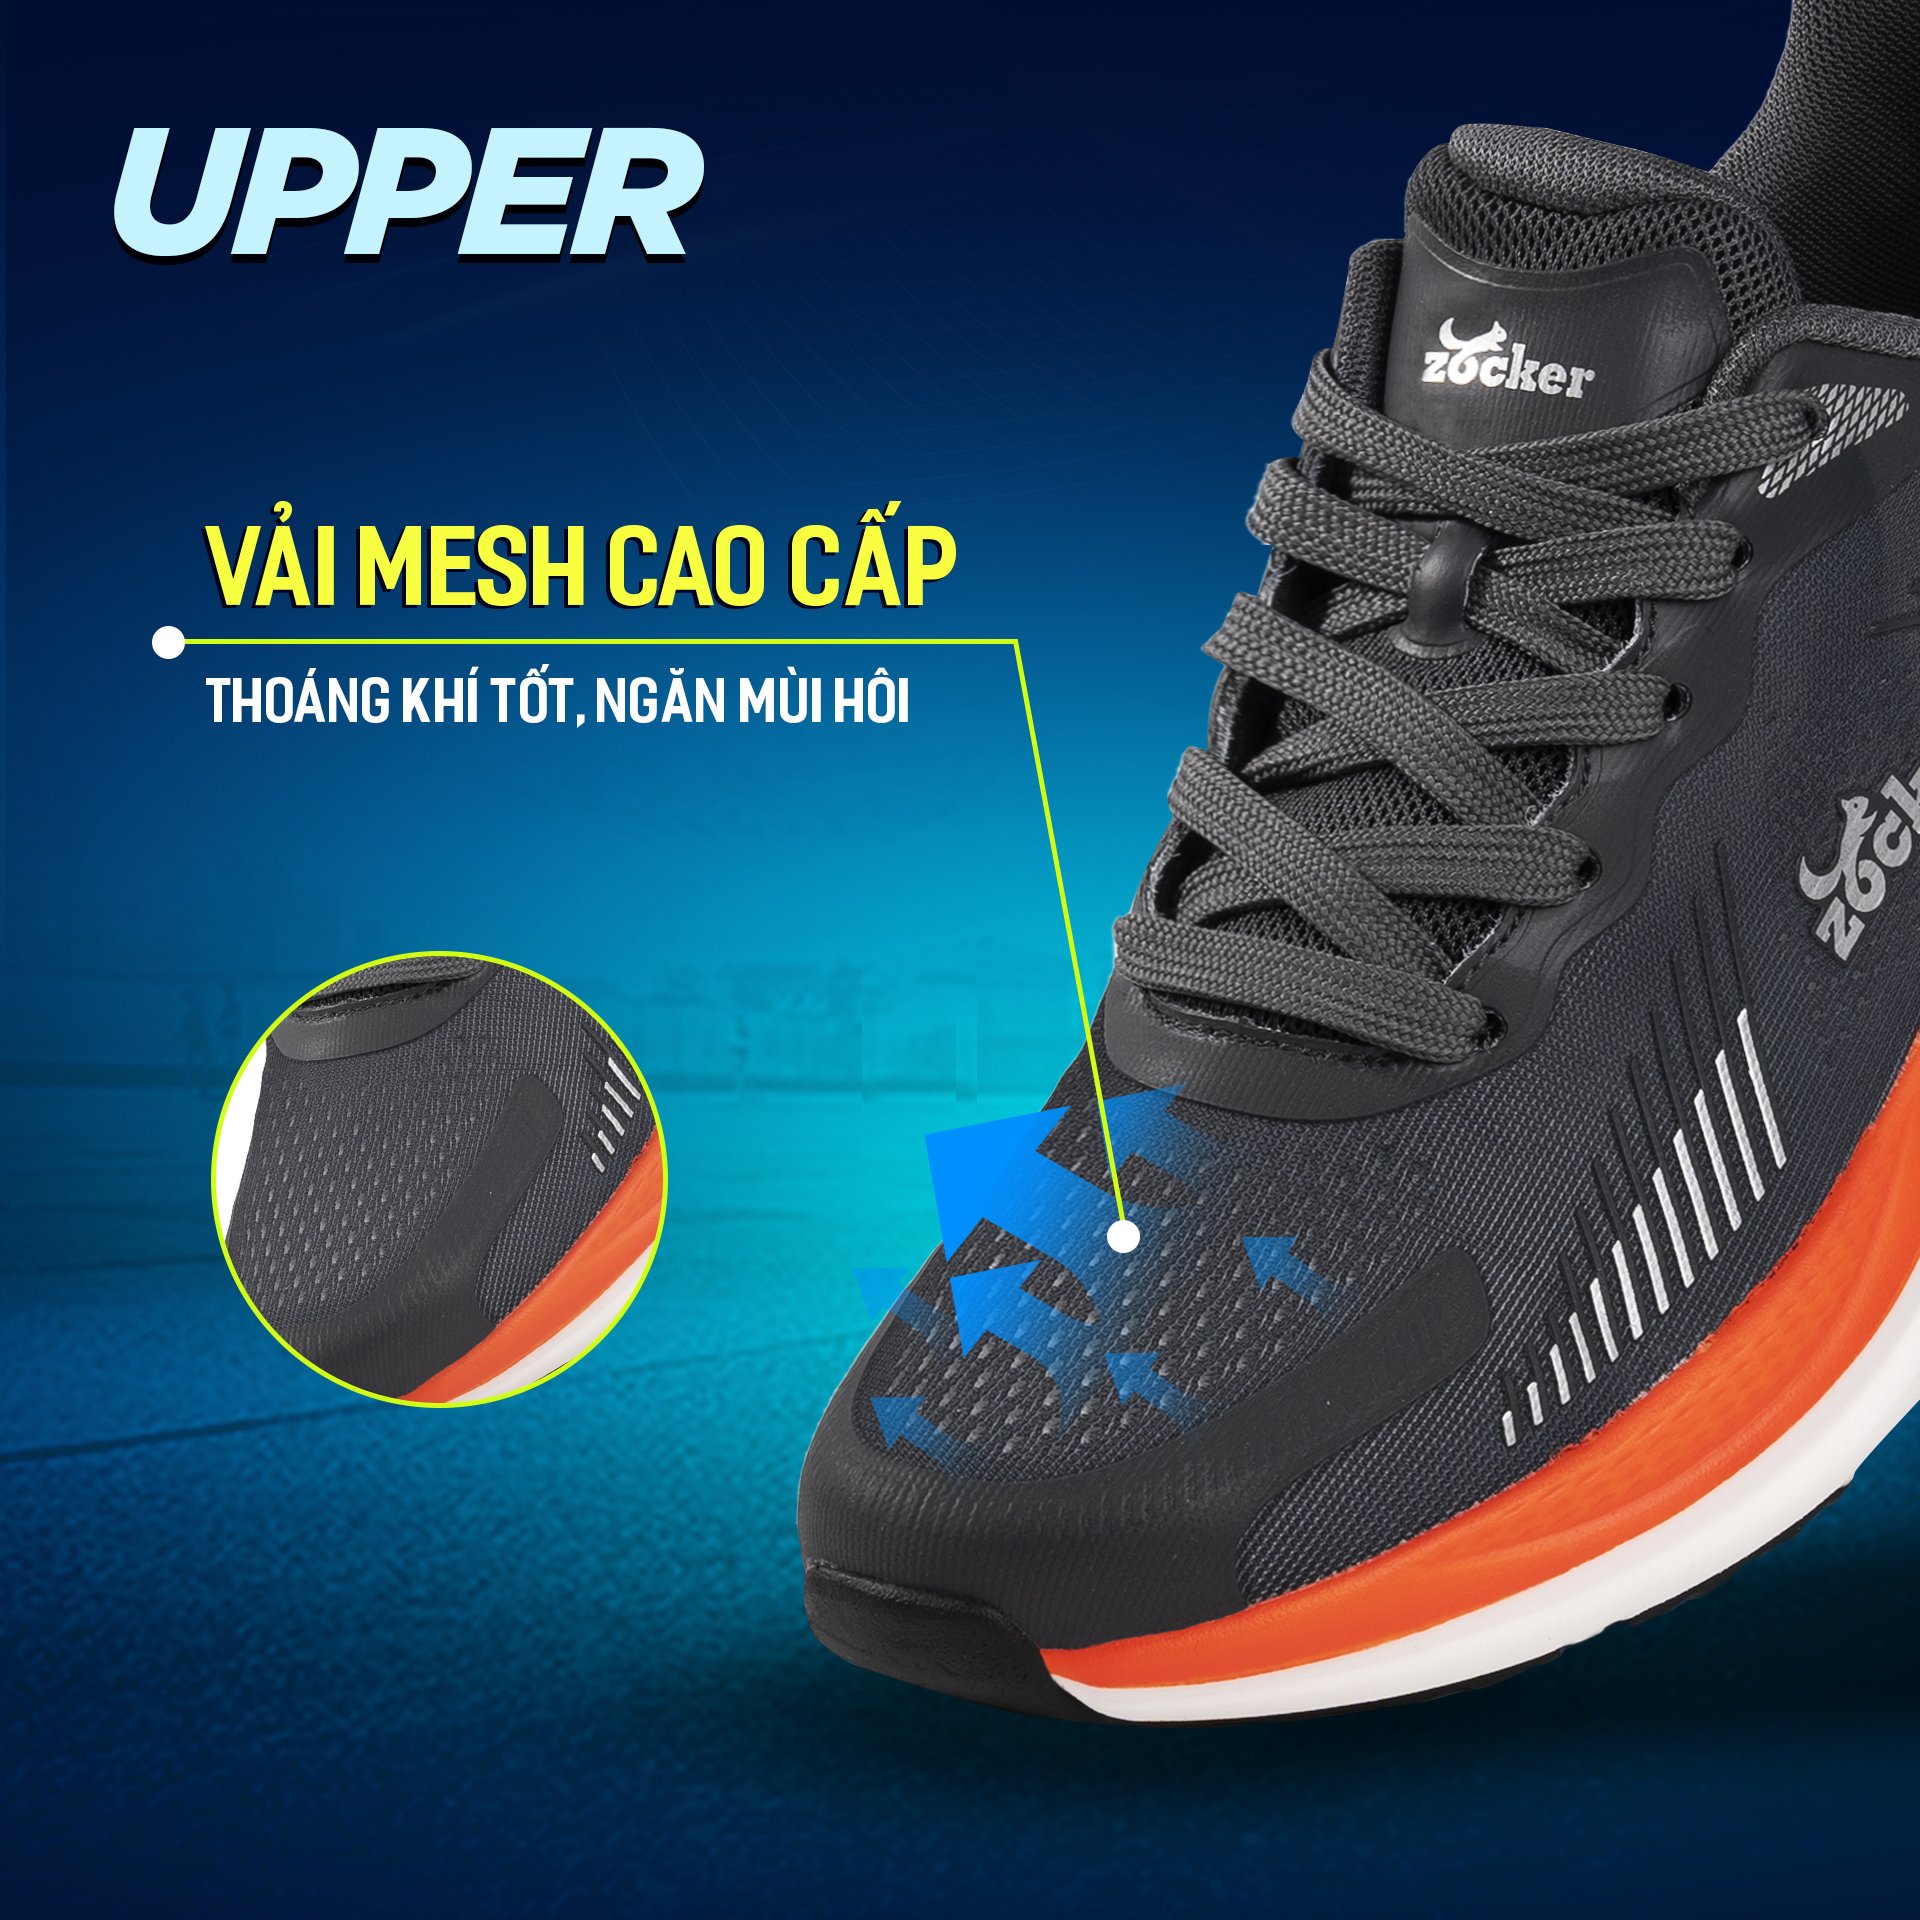 Giày Chạy Bộ Zocker Ultra Light Dark Gray - Công Nghệ Light Foam Premium Siêu Nhẹ - Siêu Êm - Siêu Nảy - Tặng kèm vệ sinh giày